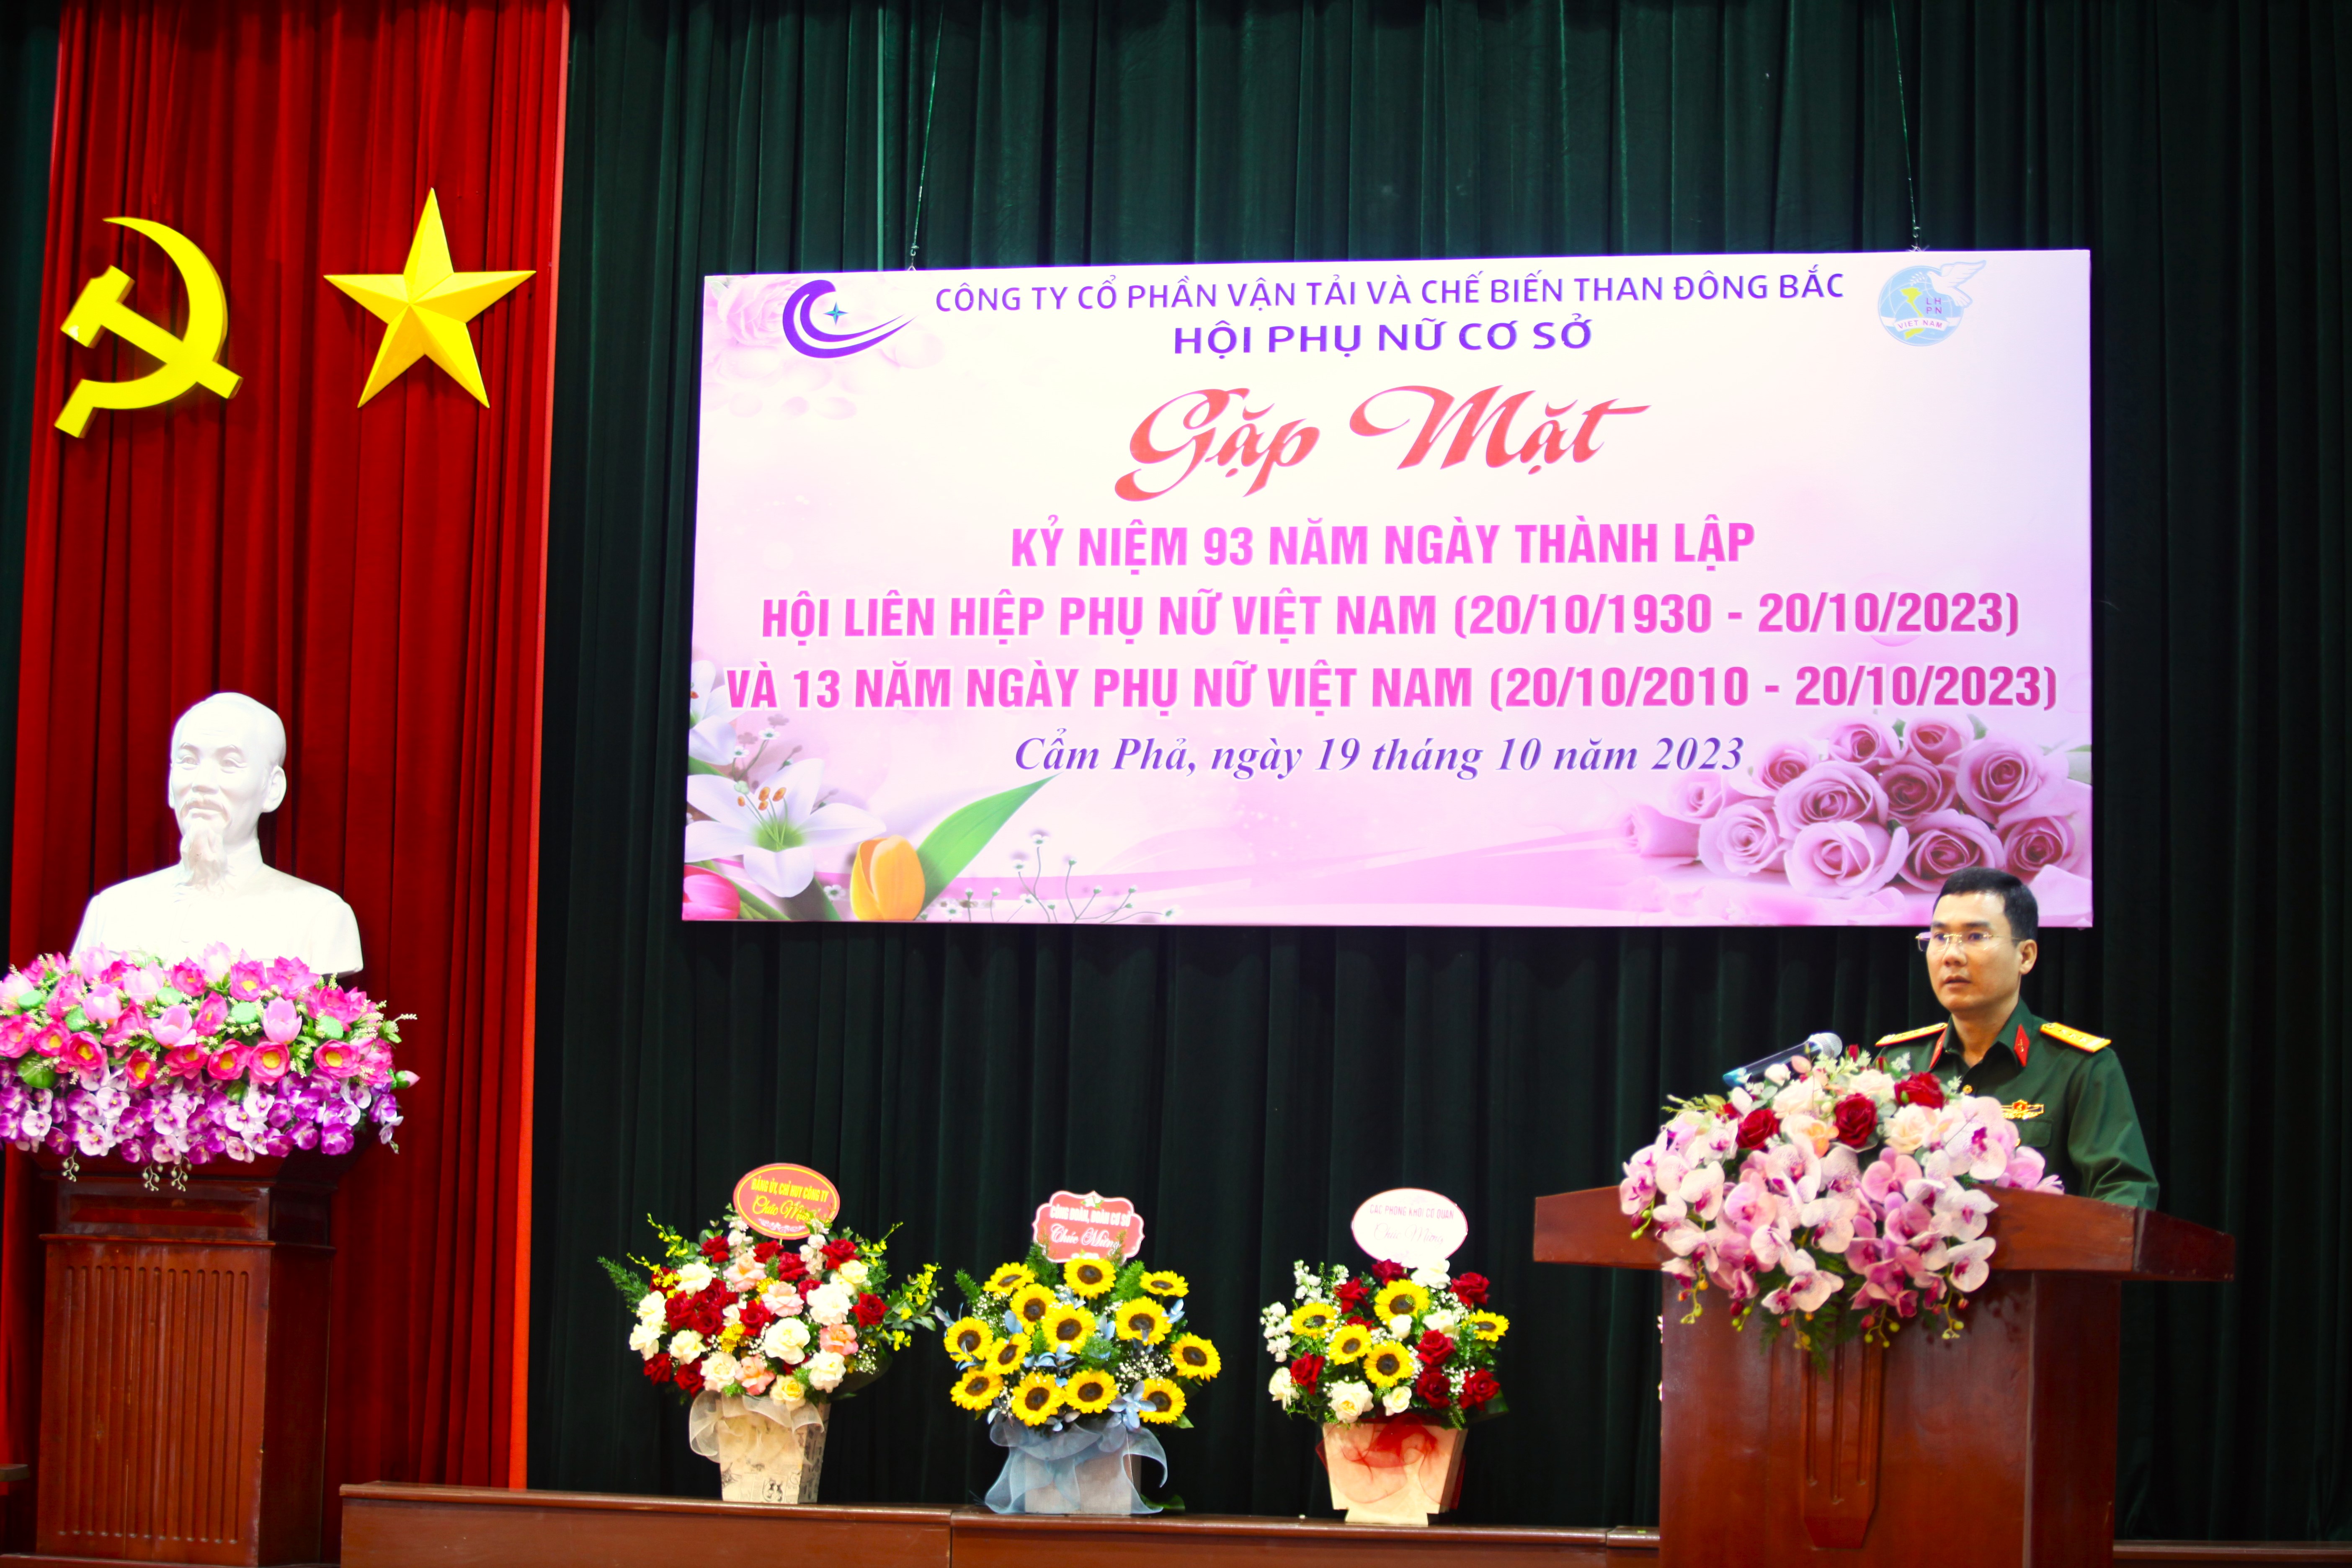 Hội phụ nữ cơ sở Công ty cổ phần Vận tải và Chế biến than Đông Bắc tổ chức Gặp mặt kỷ niệm 93 năm Ngày thành lập Hội LHPN Việt Nam